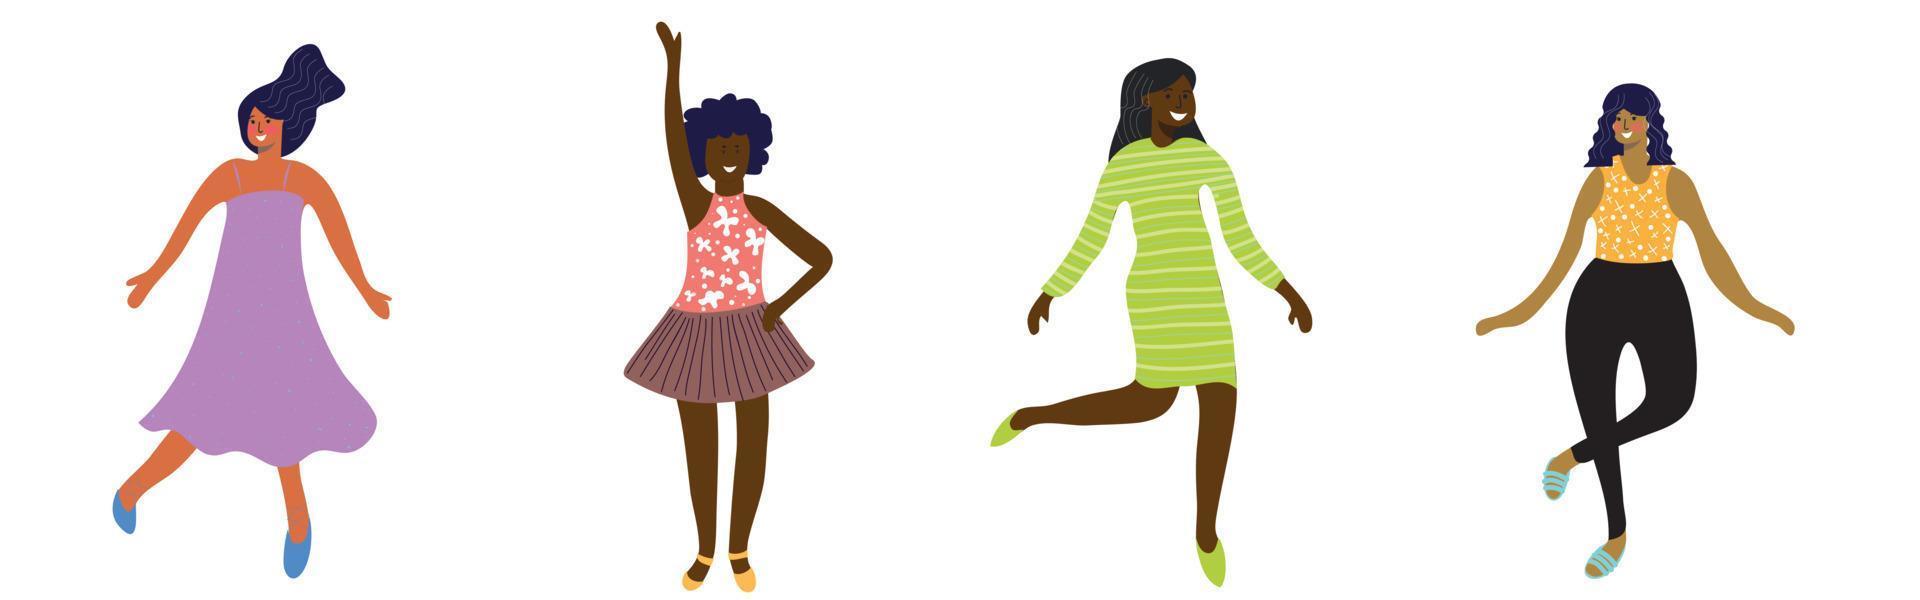 glada kvinnor av olika etnicitet dansar och hoppar av glädje. begreppet fred, kärlek och lycka för att vara kvinna. vektor illustration på vit bakgrund